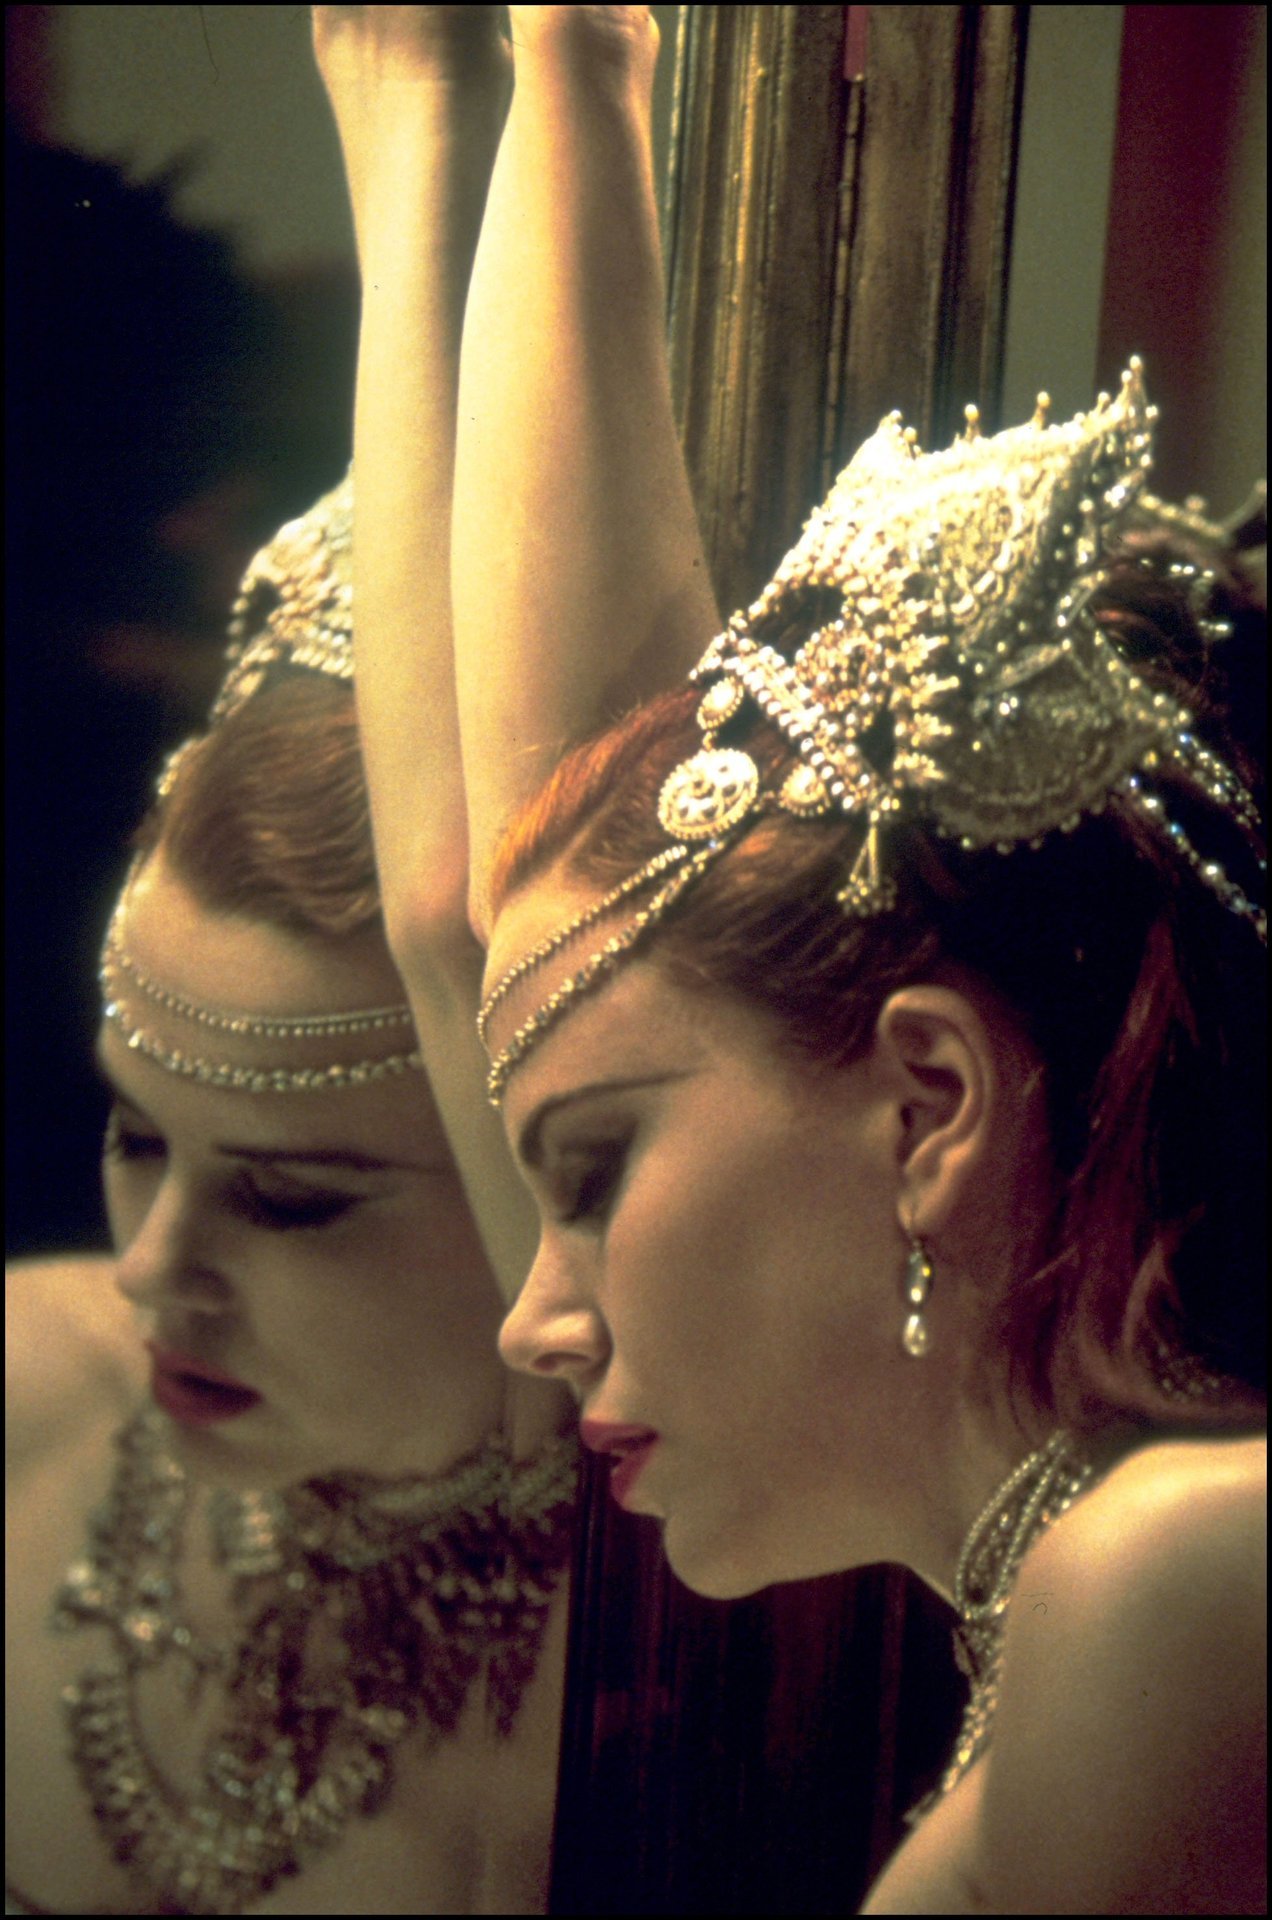 Nicole Kidman in Moulin Rouge! (2001)